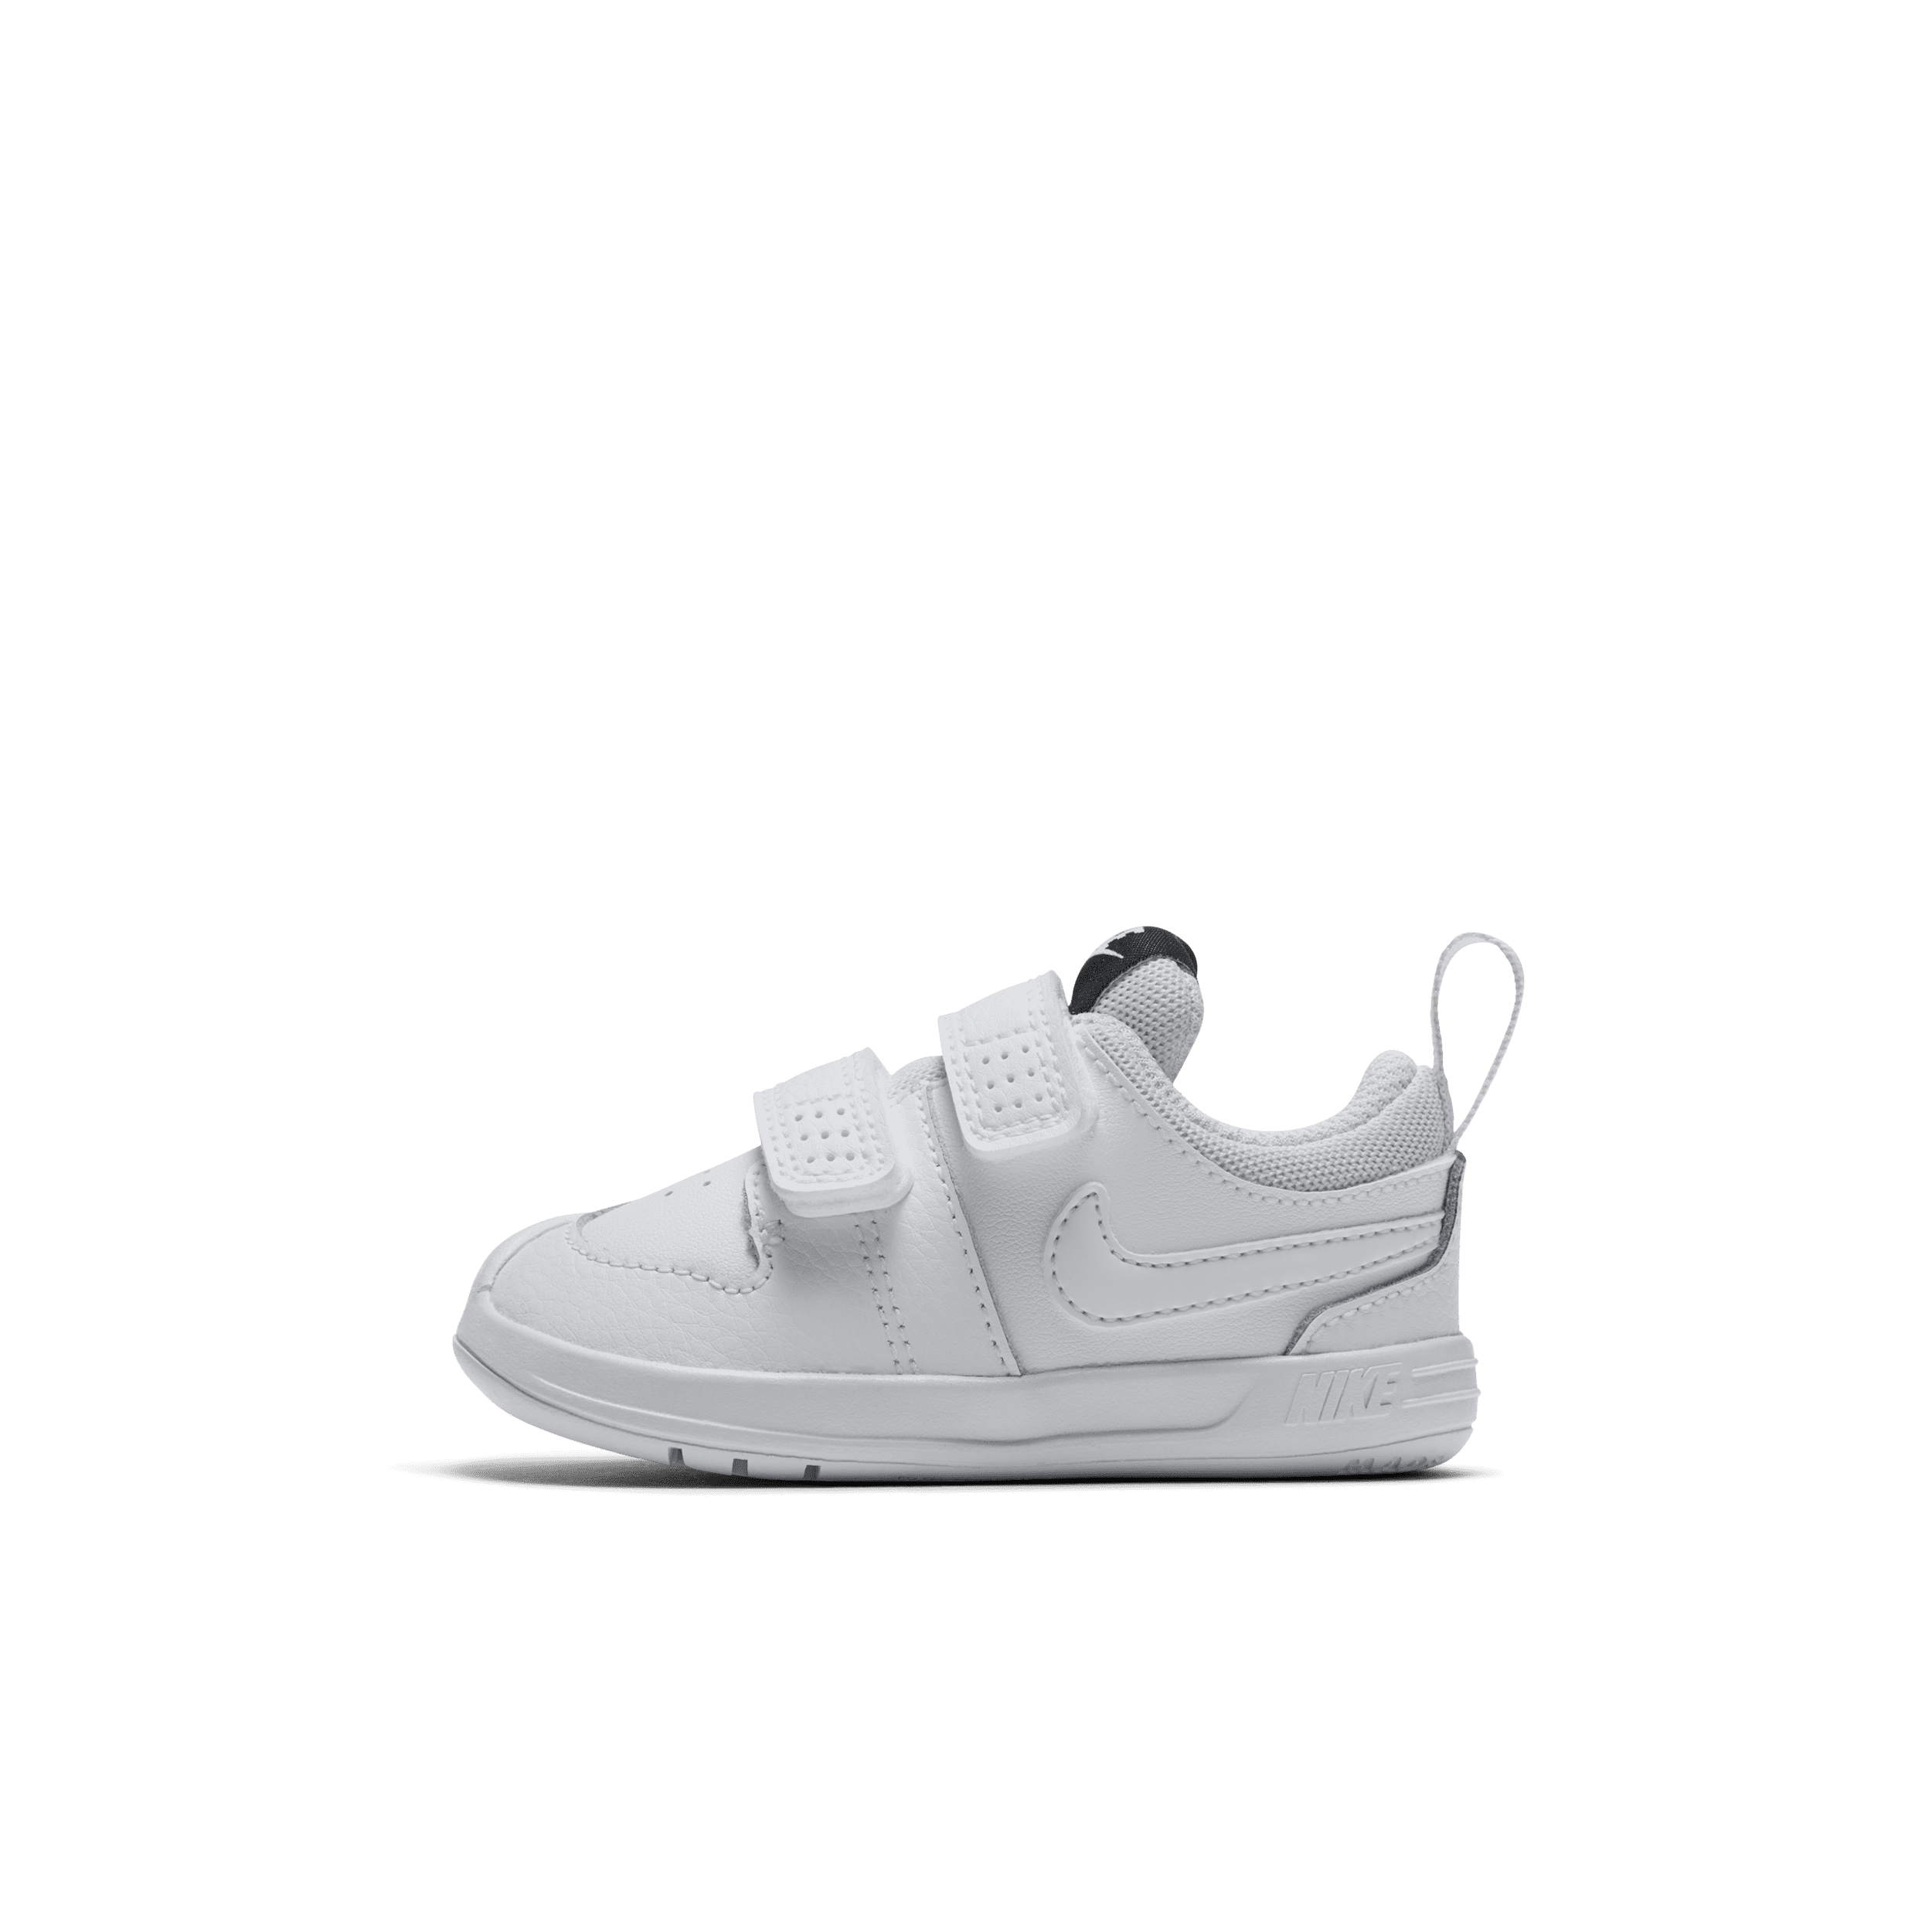 Nike Pico 5 Schoenen voor baby's/peuters - Wit